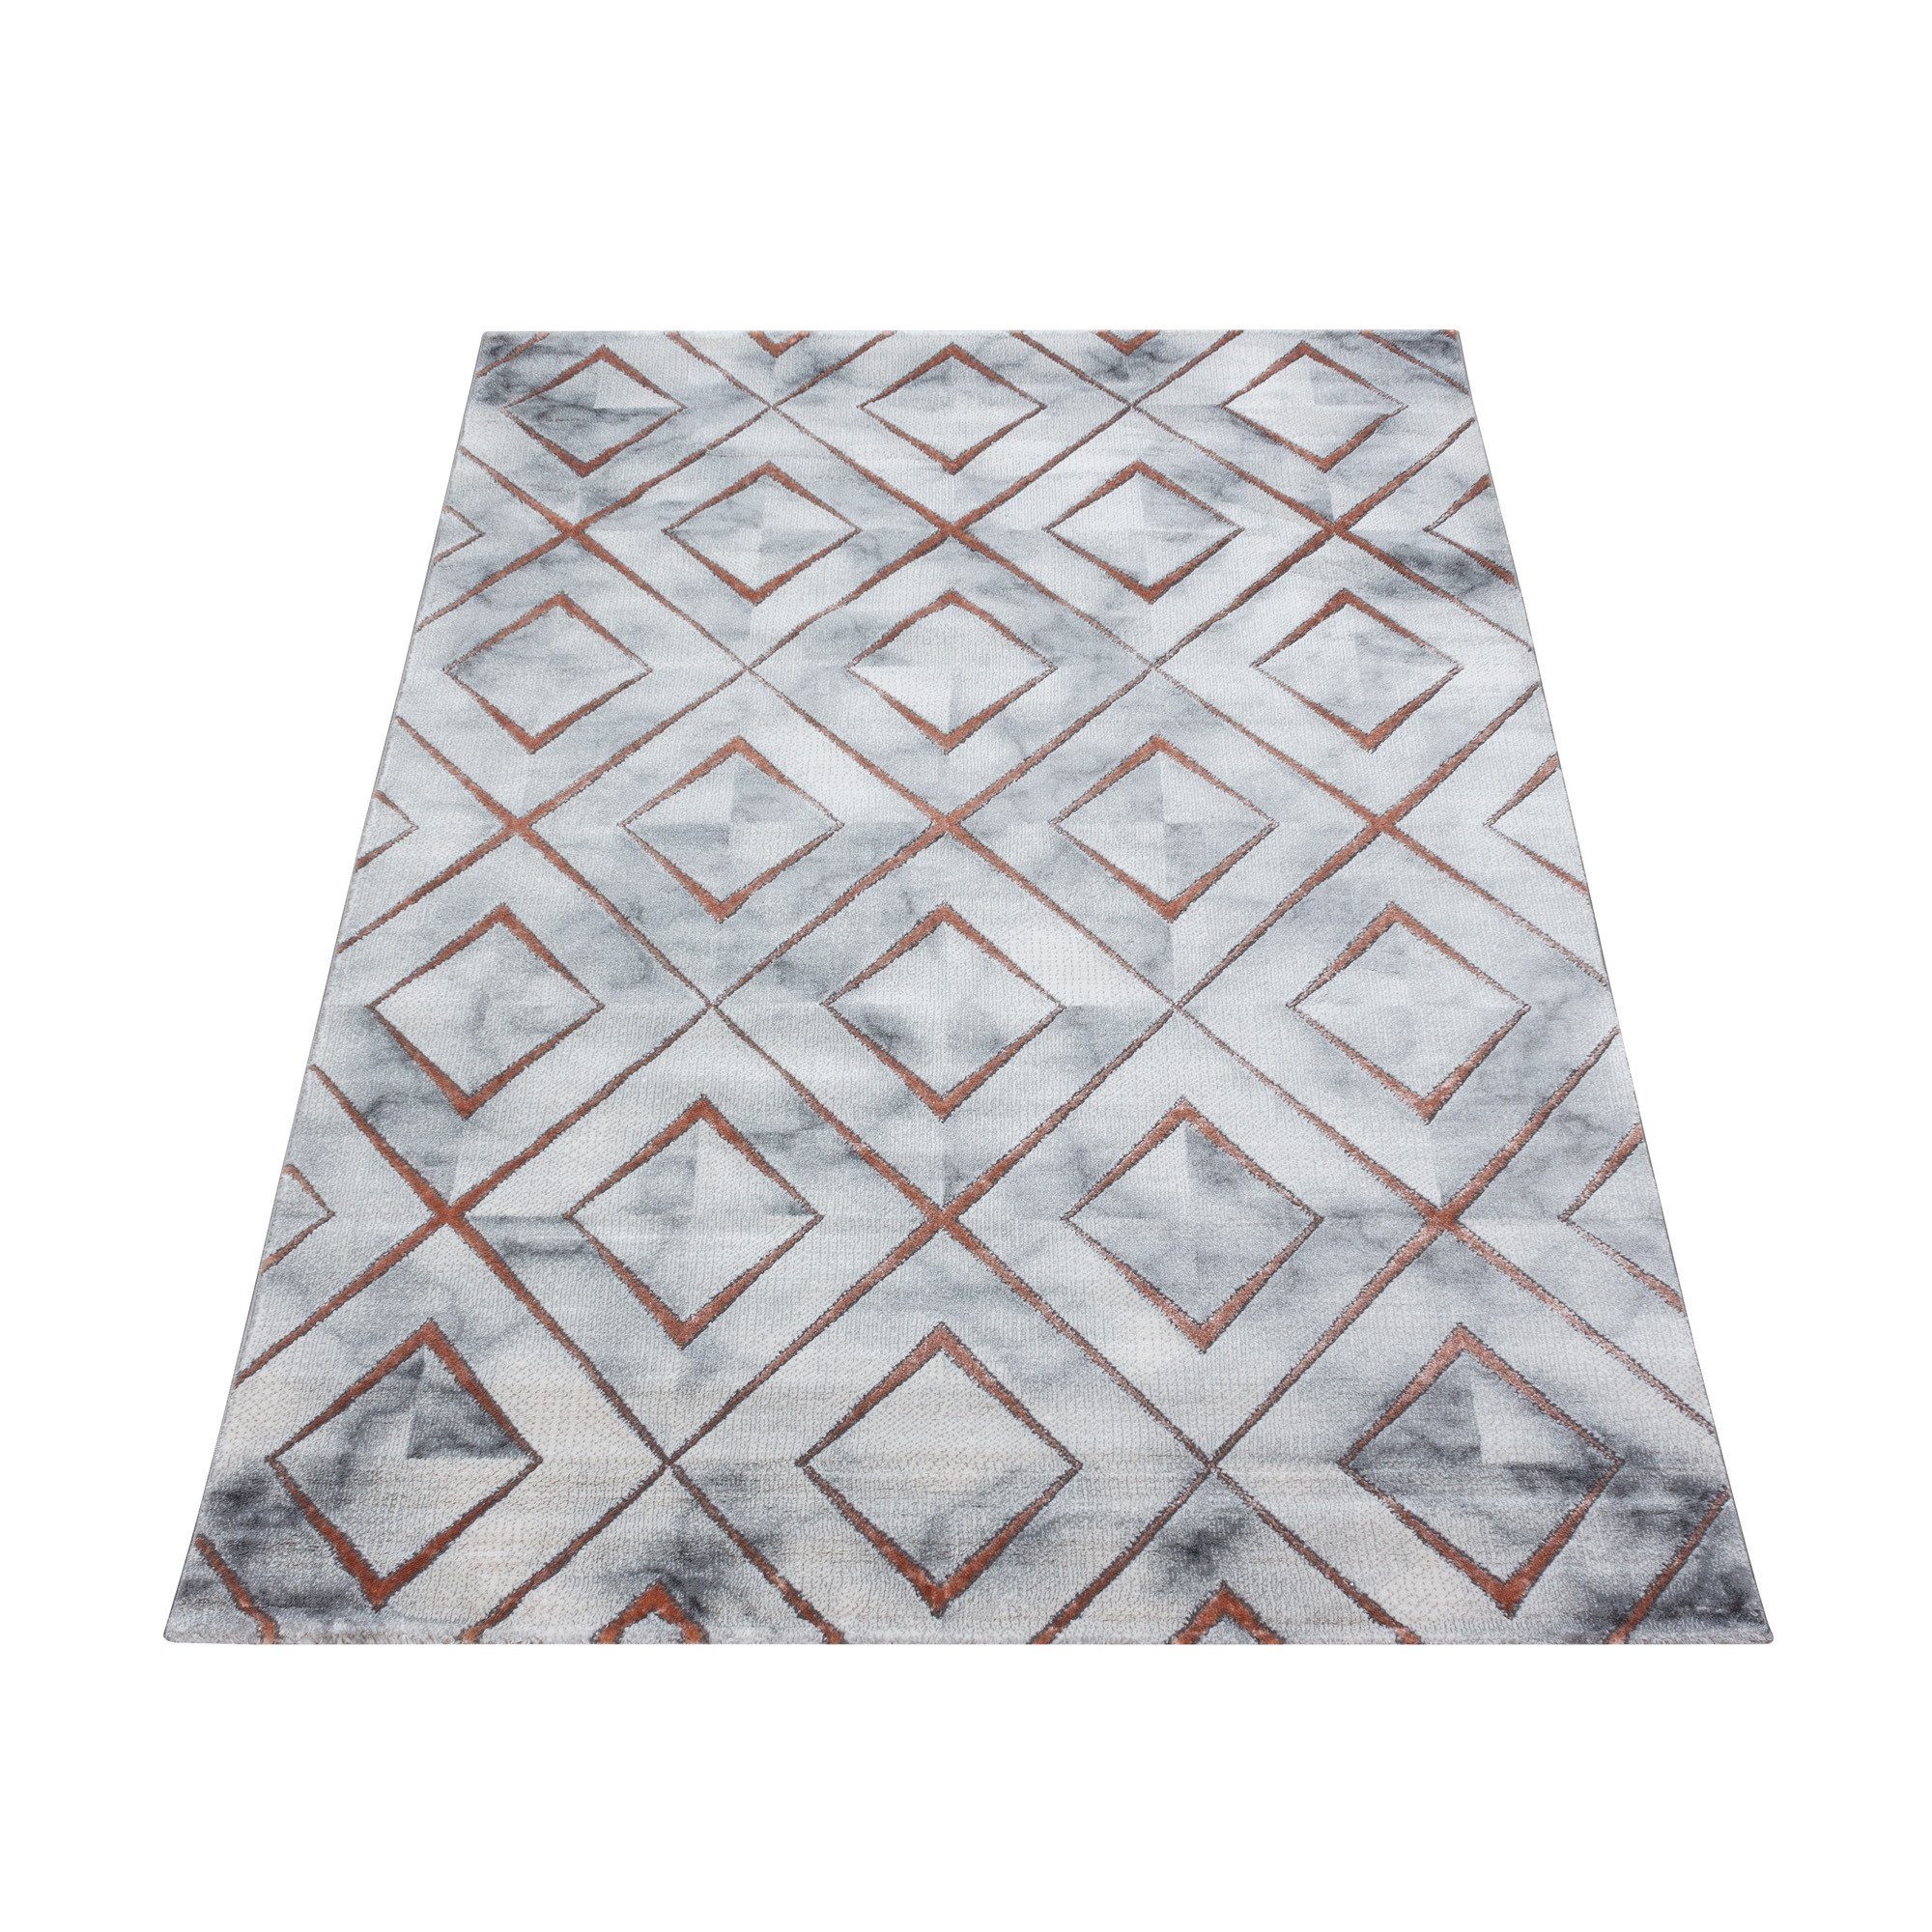 Designteppich Marmoroptik Flachflorteppich Kurzflorteppich Wohnzimmer Bronze Muster, Miovani